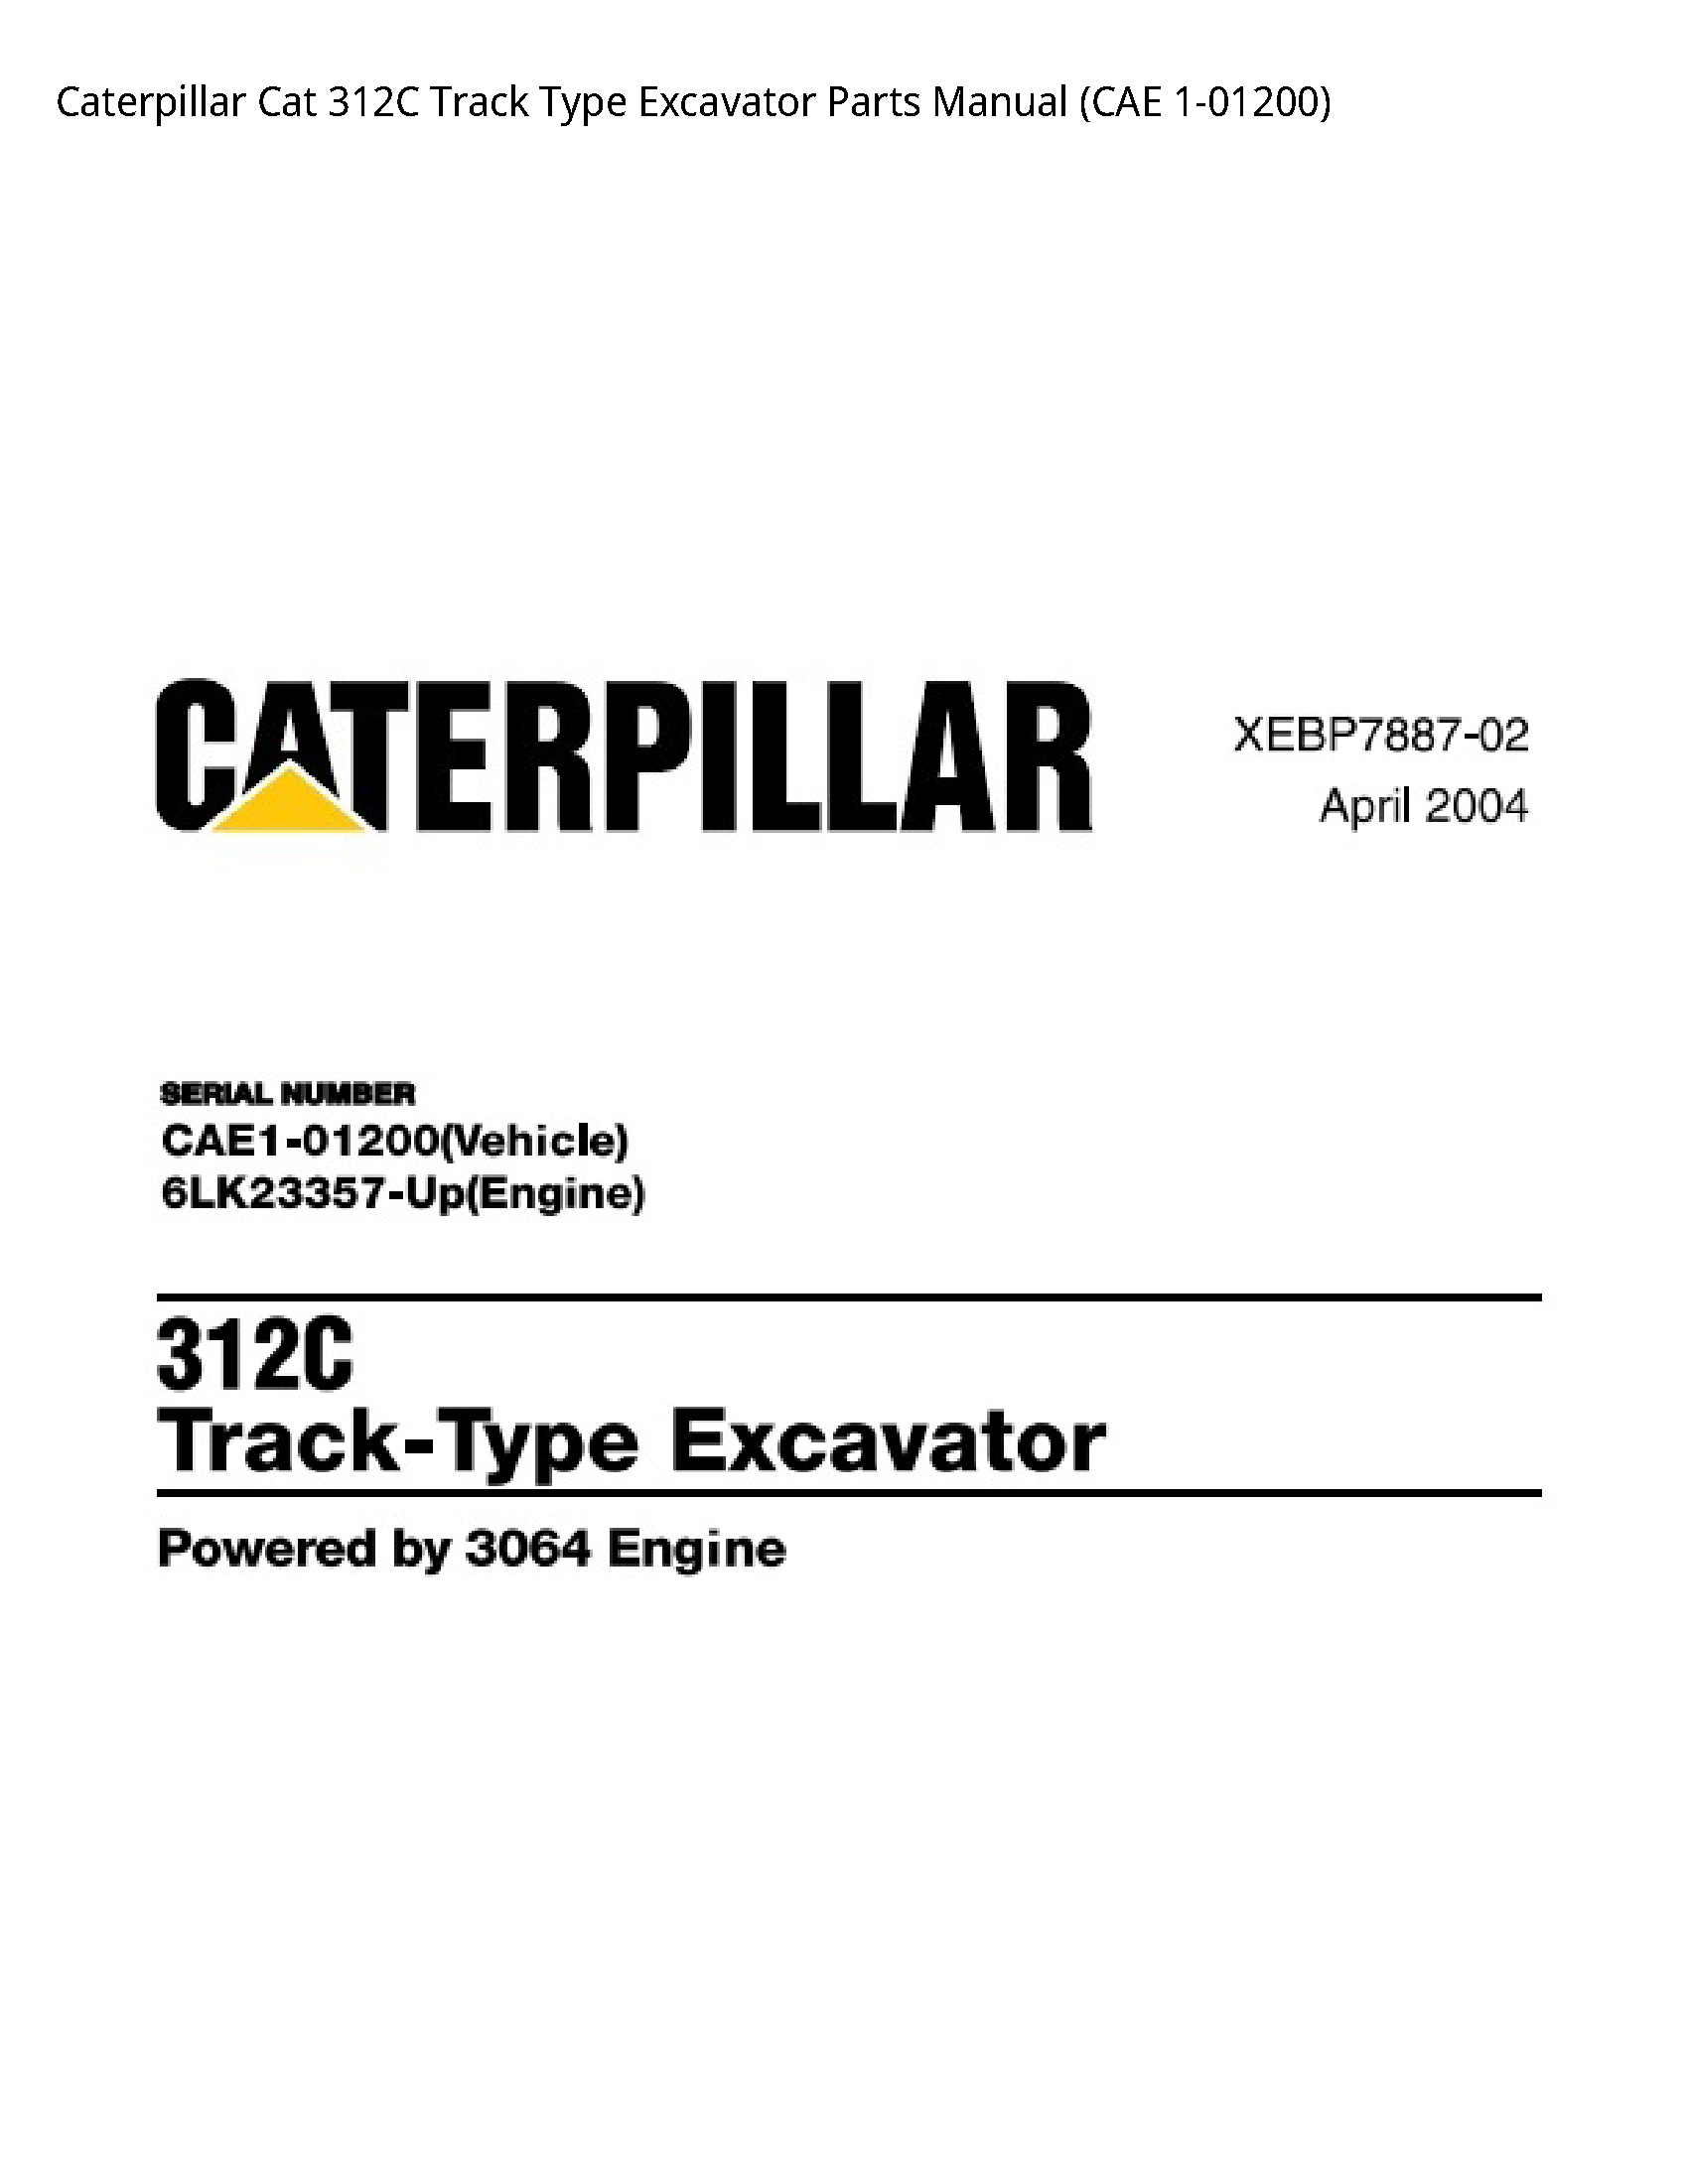 Caterpillar 312C Cat Track Type Excavator Parts manual